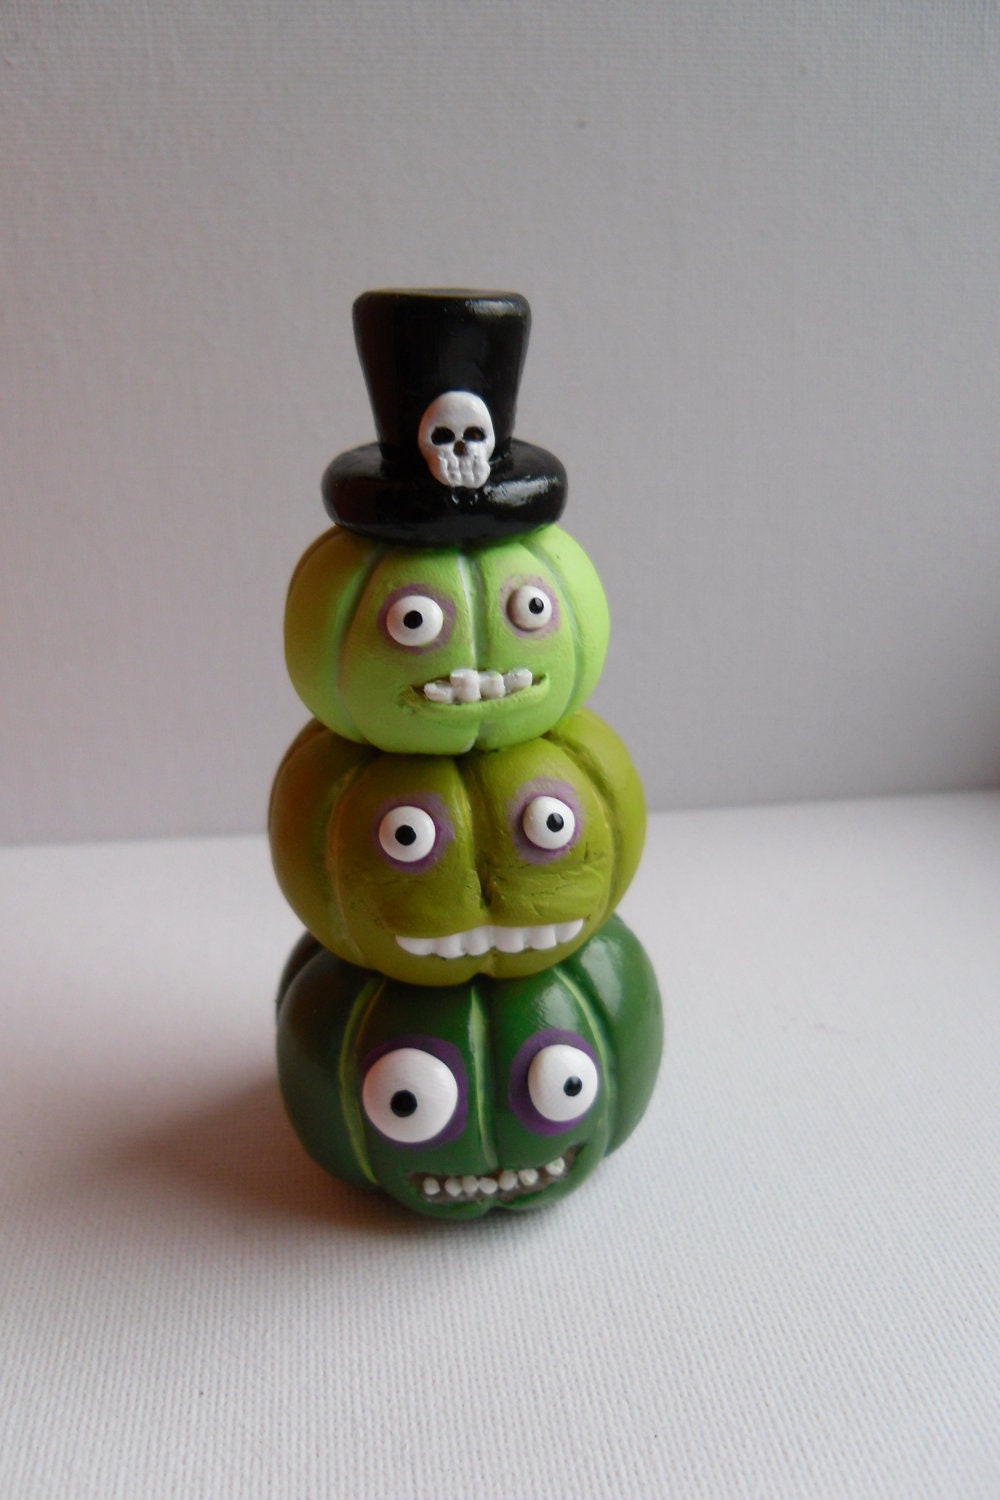 Halloween Pumpkins - The Voodoo Brothers - Stack of Three Green Pumpkins - Clay Sculptures - OOAK - Erinle